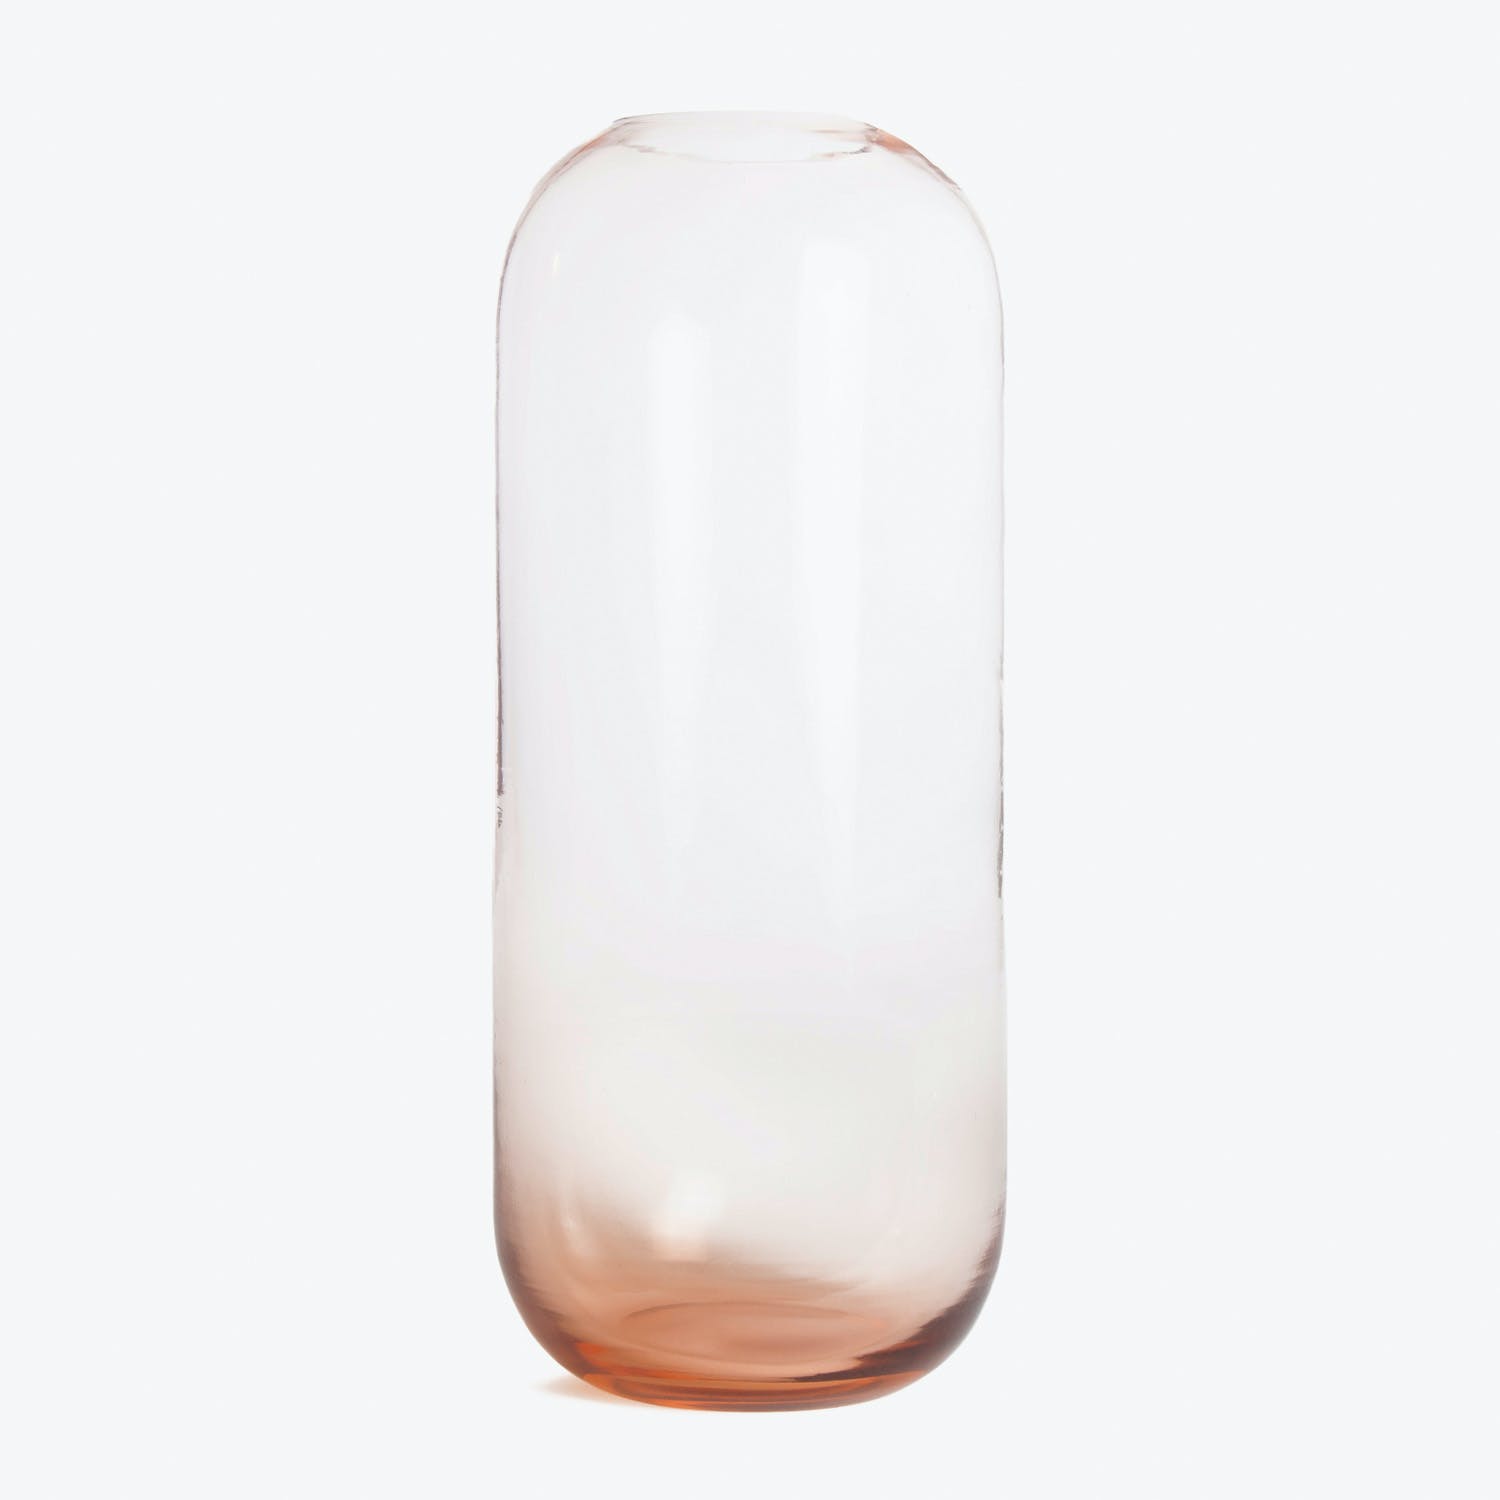 An elegant, transparent glass vase with a subtle gradient effect.